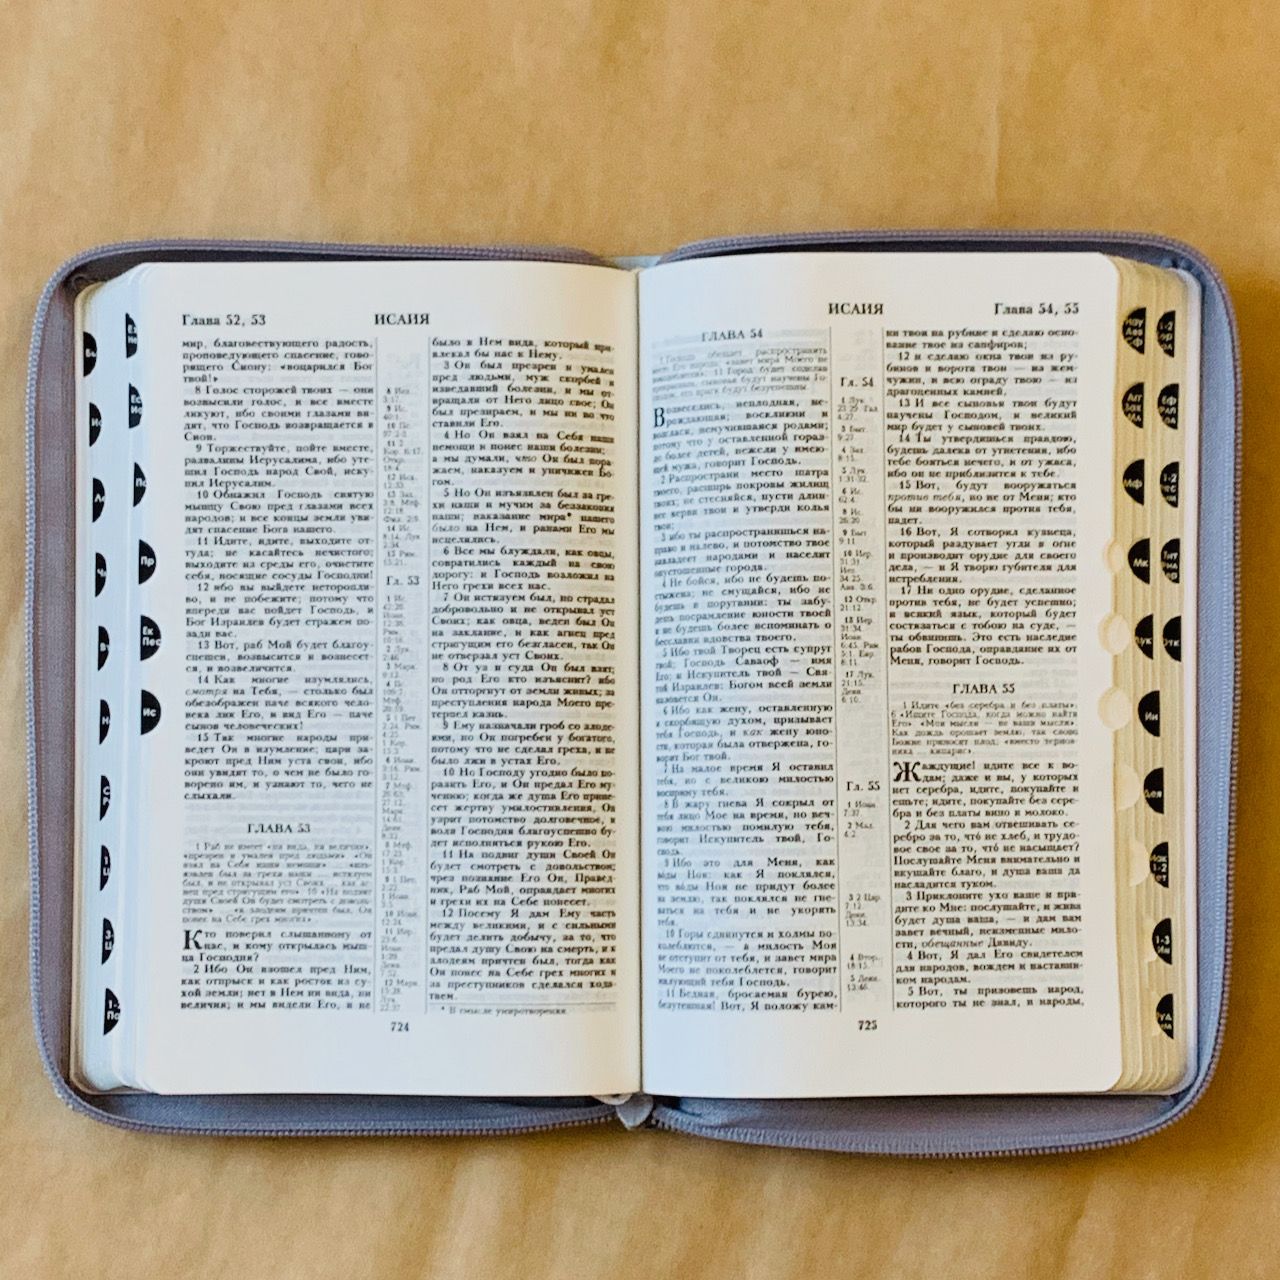 Библия 055 zti код F5 7075 переплет из искусственной кожи на молнии с индексами, цвет серебристый с прожилками, дизайн "голубь" , средний формат, 143*220 мм, паралельные места по центру страницы, серебряный обрез, крупный шрифт